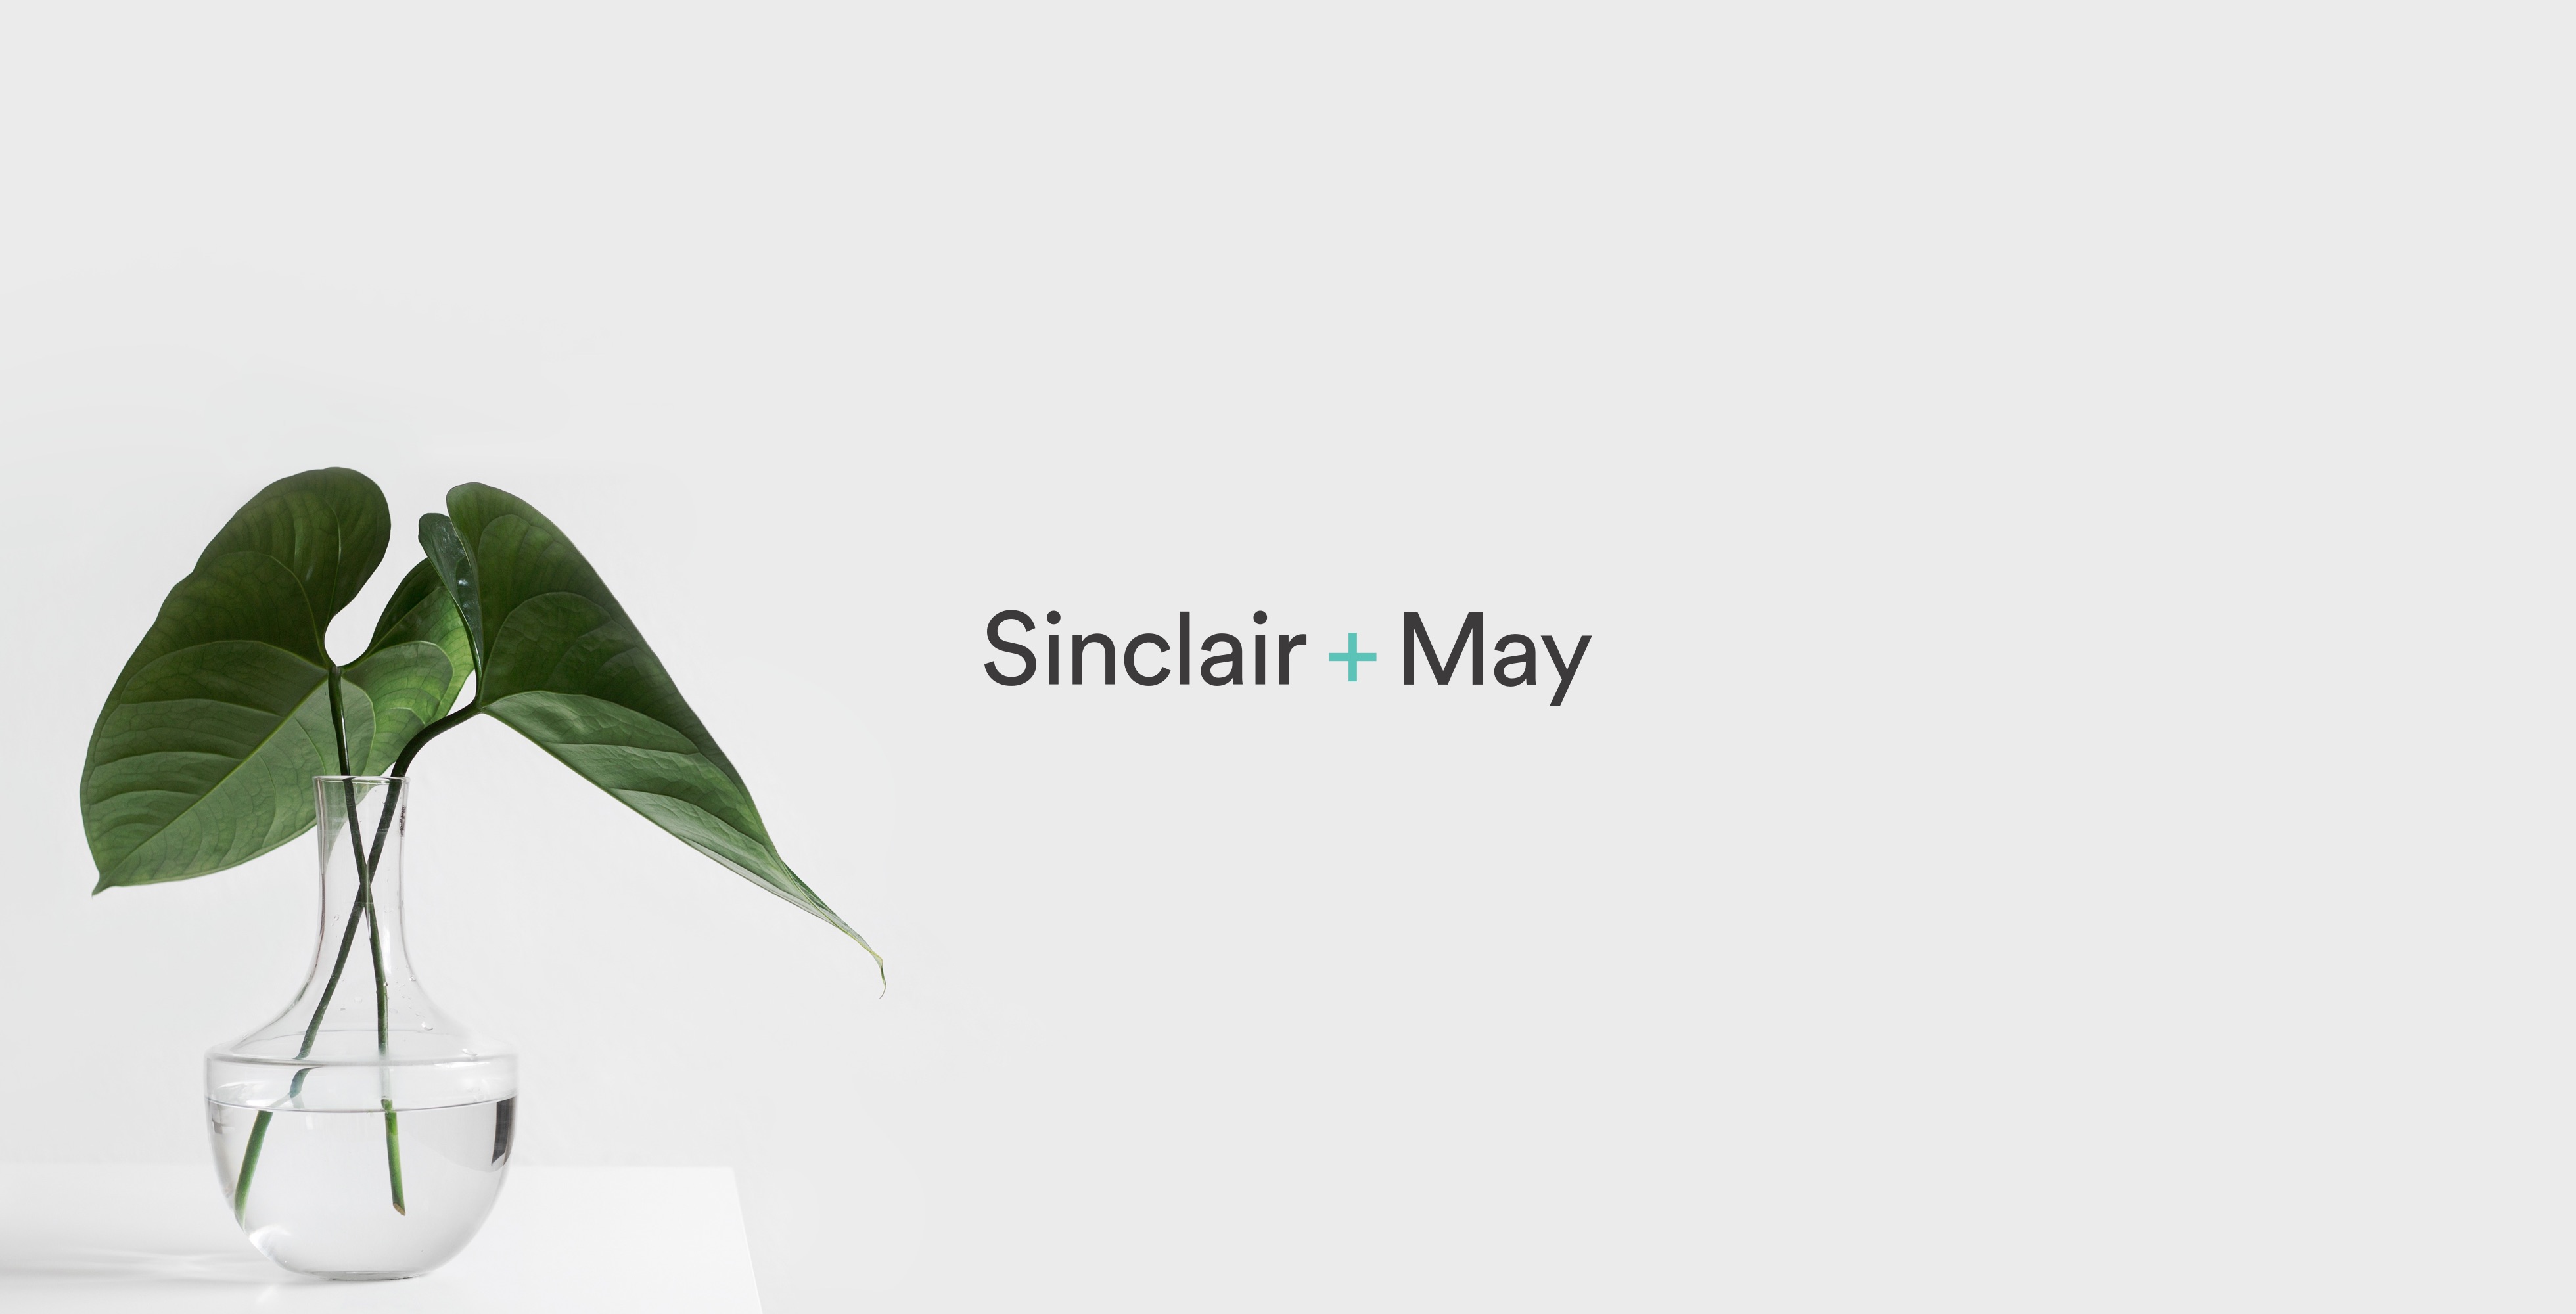 Sinclair + May